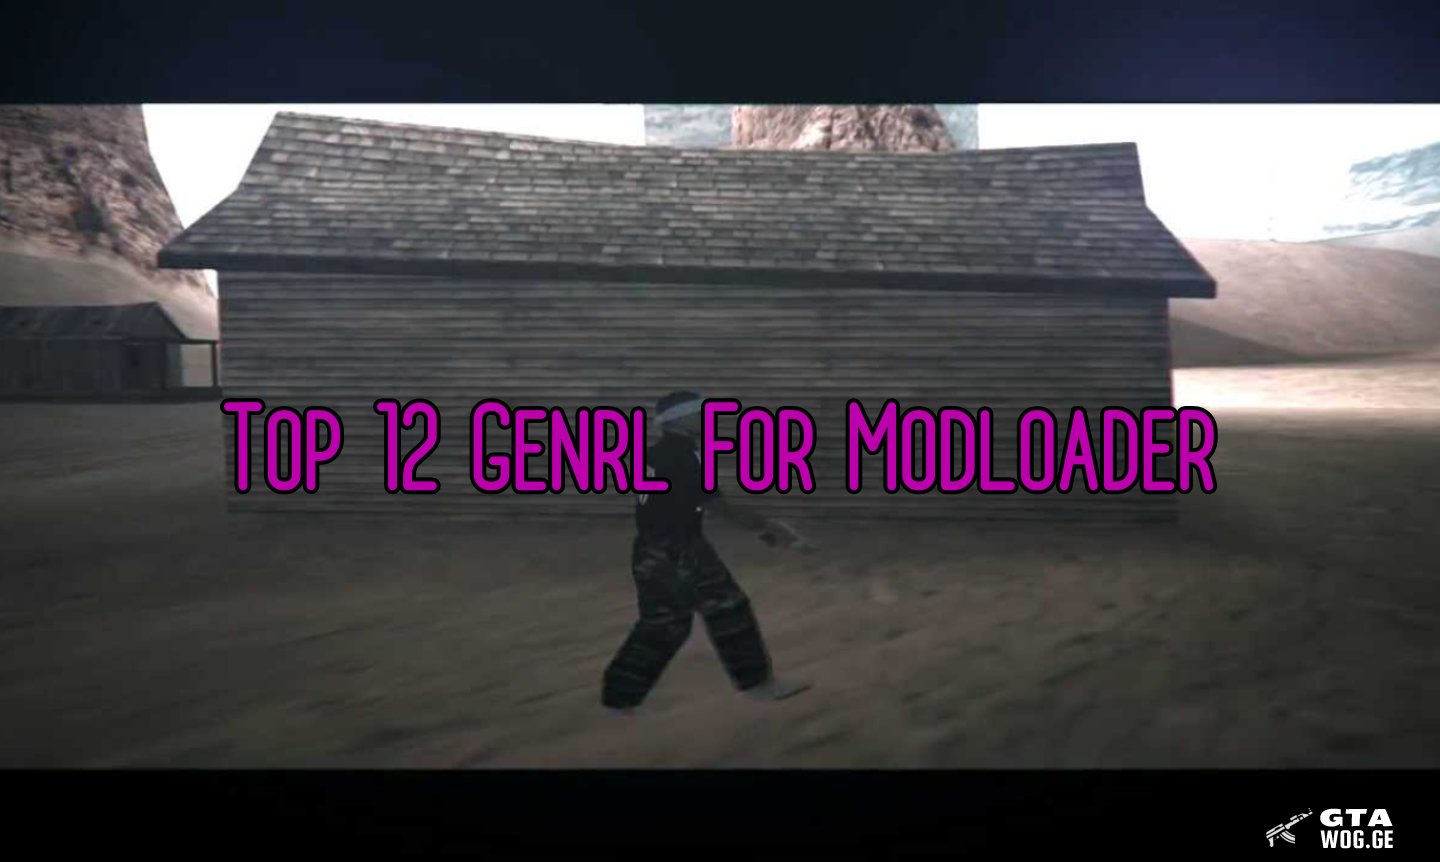 [Sounds] Top 12 Genrl For Modloader